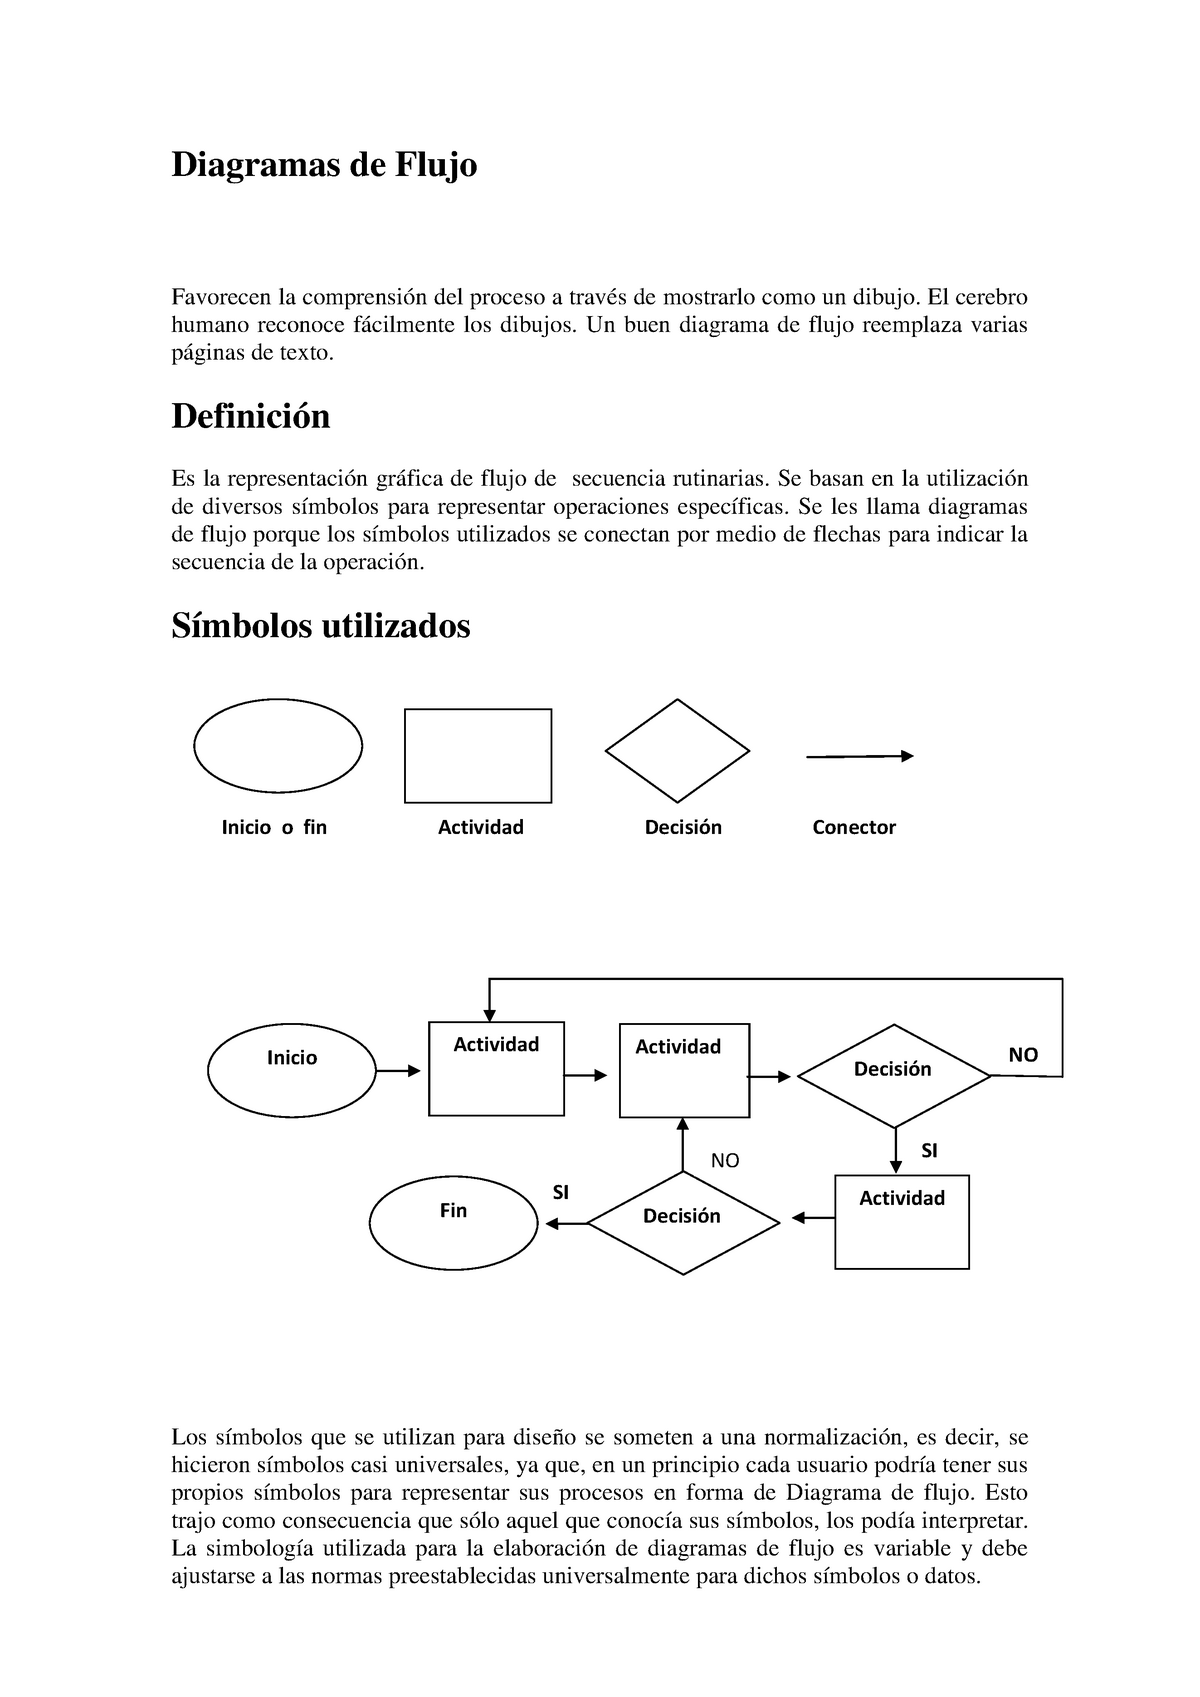 Diagramas-de-flujo - Descripción y tipos de diagramas de flujo. - Diagramas  de Flujo Favorecen la - Studocu